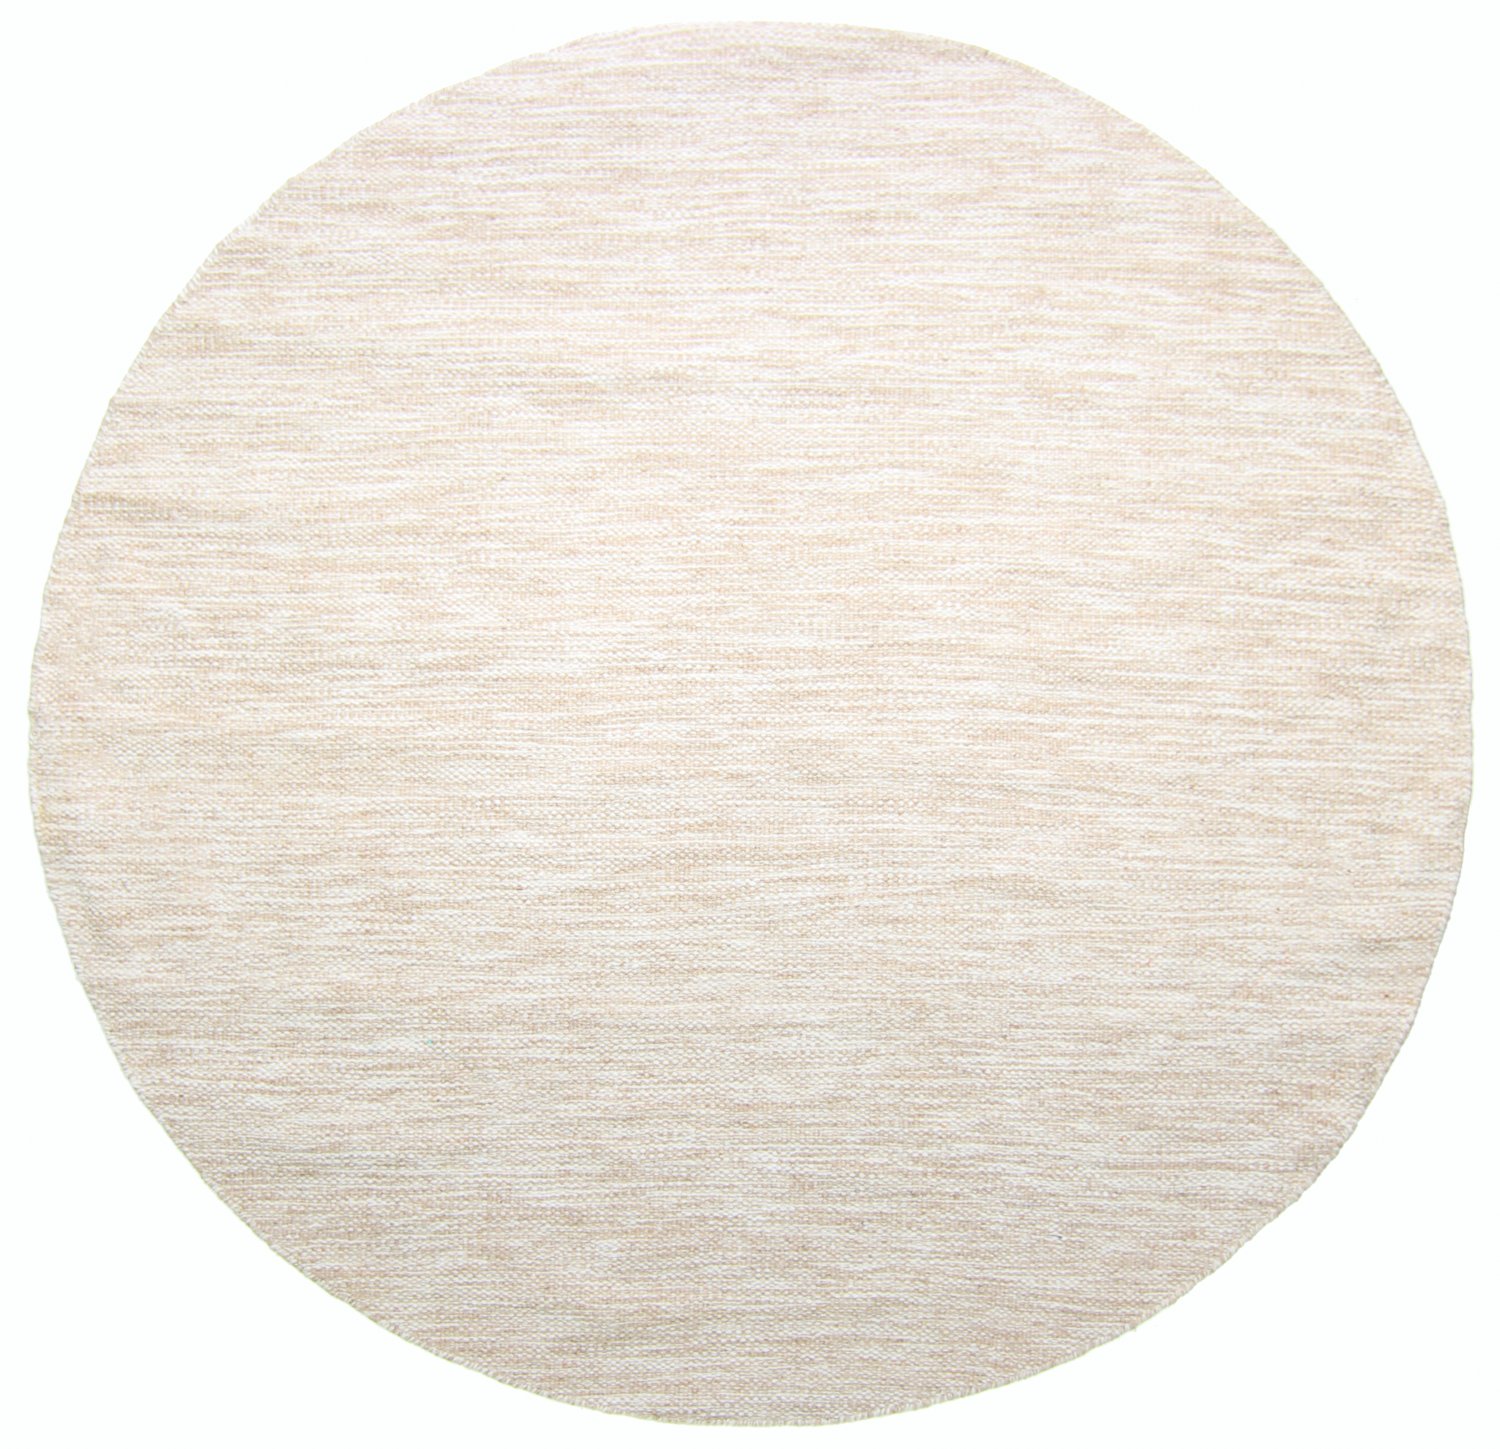 Pyöreä matot - Savona (beige)